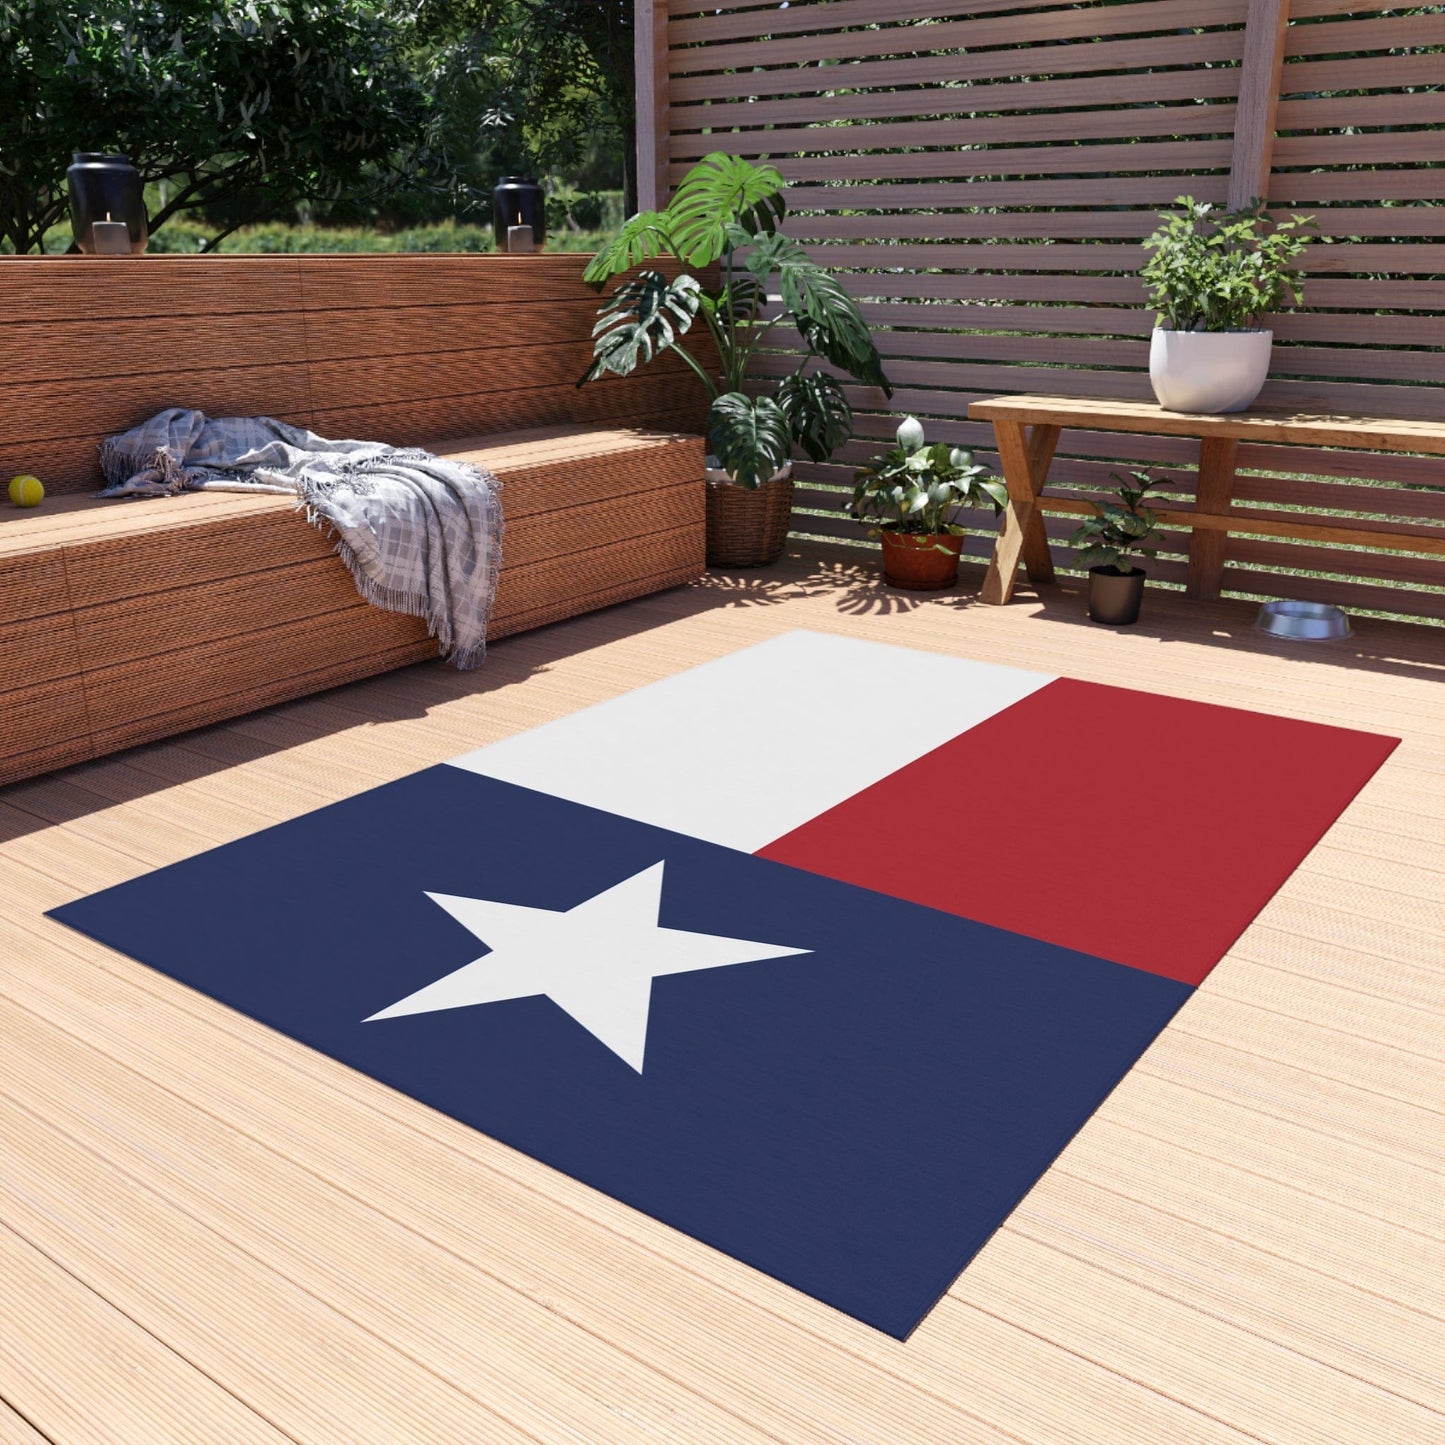 Printify Home Decor Texas Flag Outdoor Rug